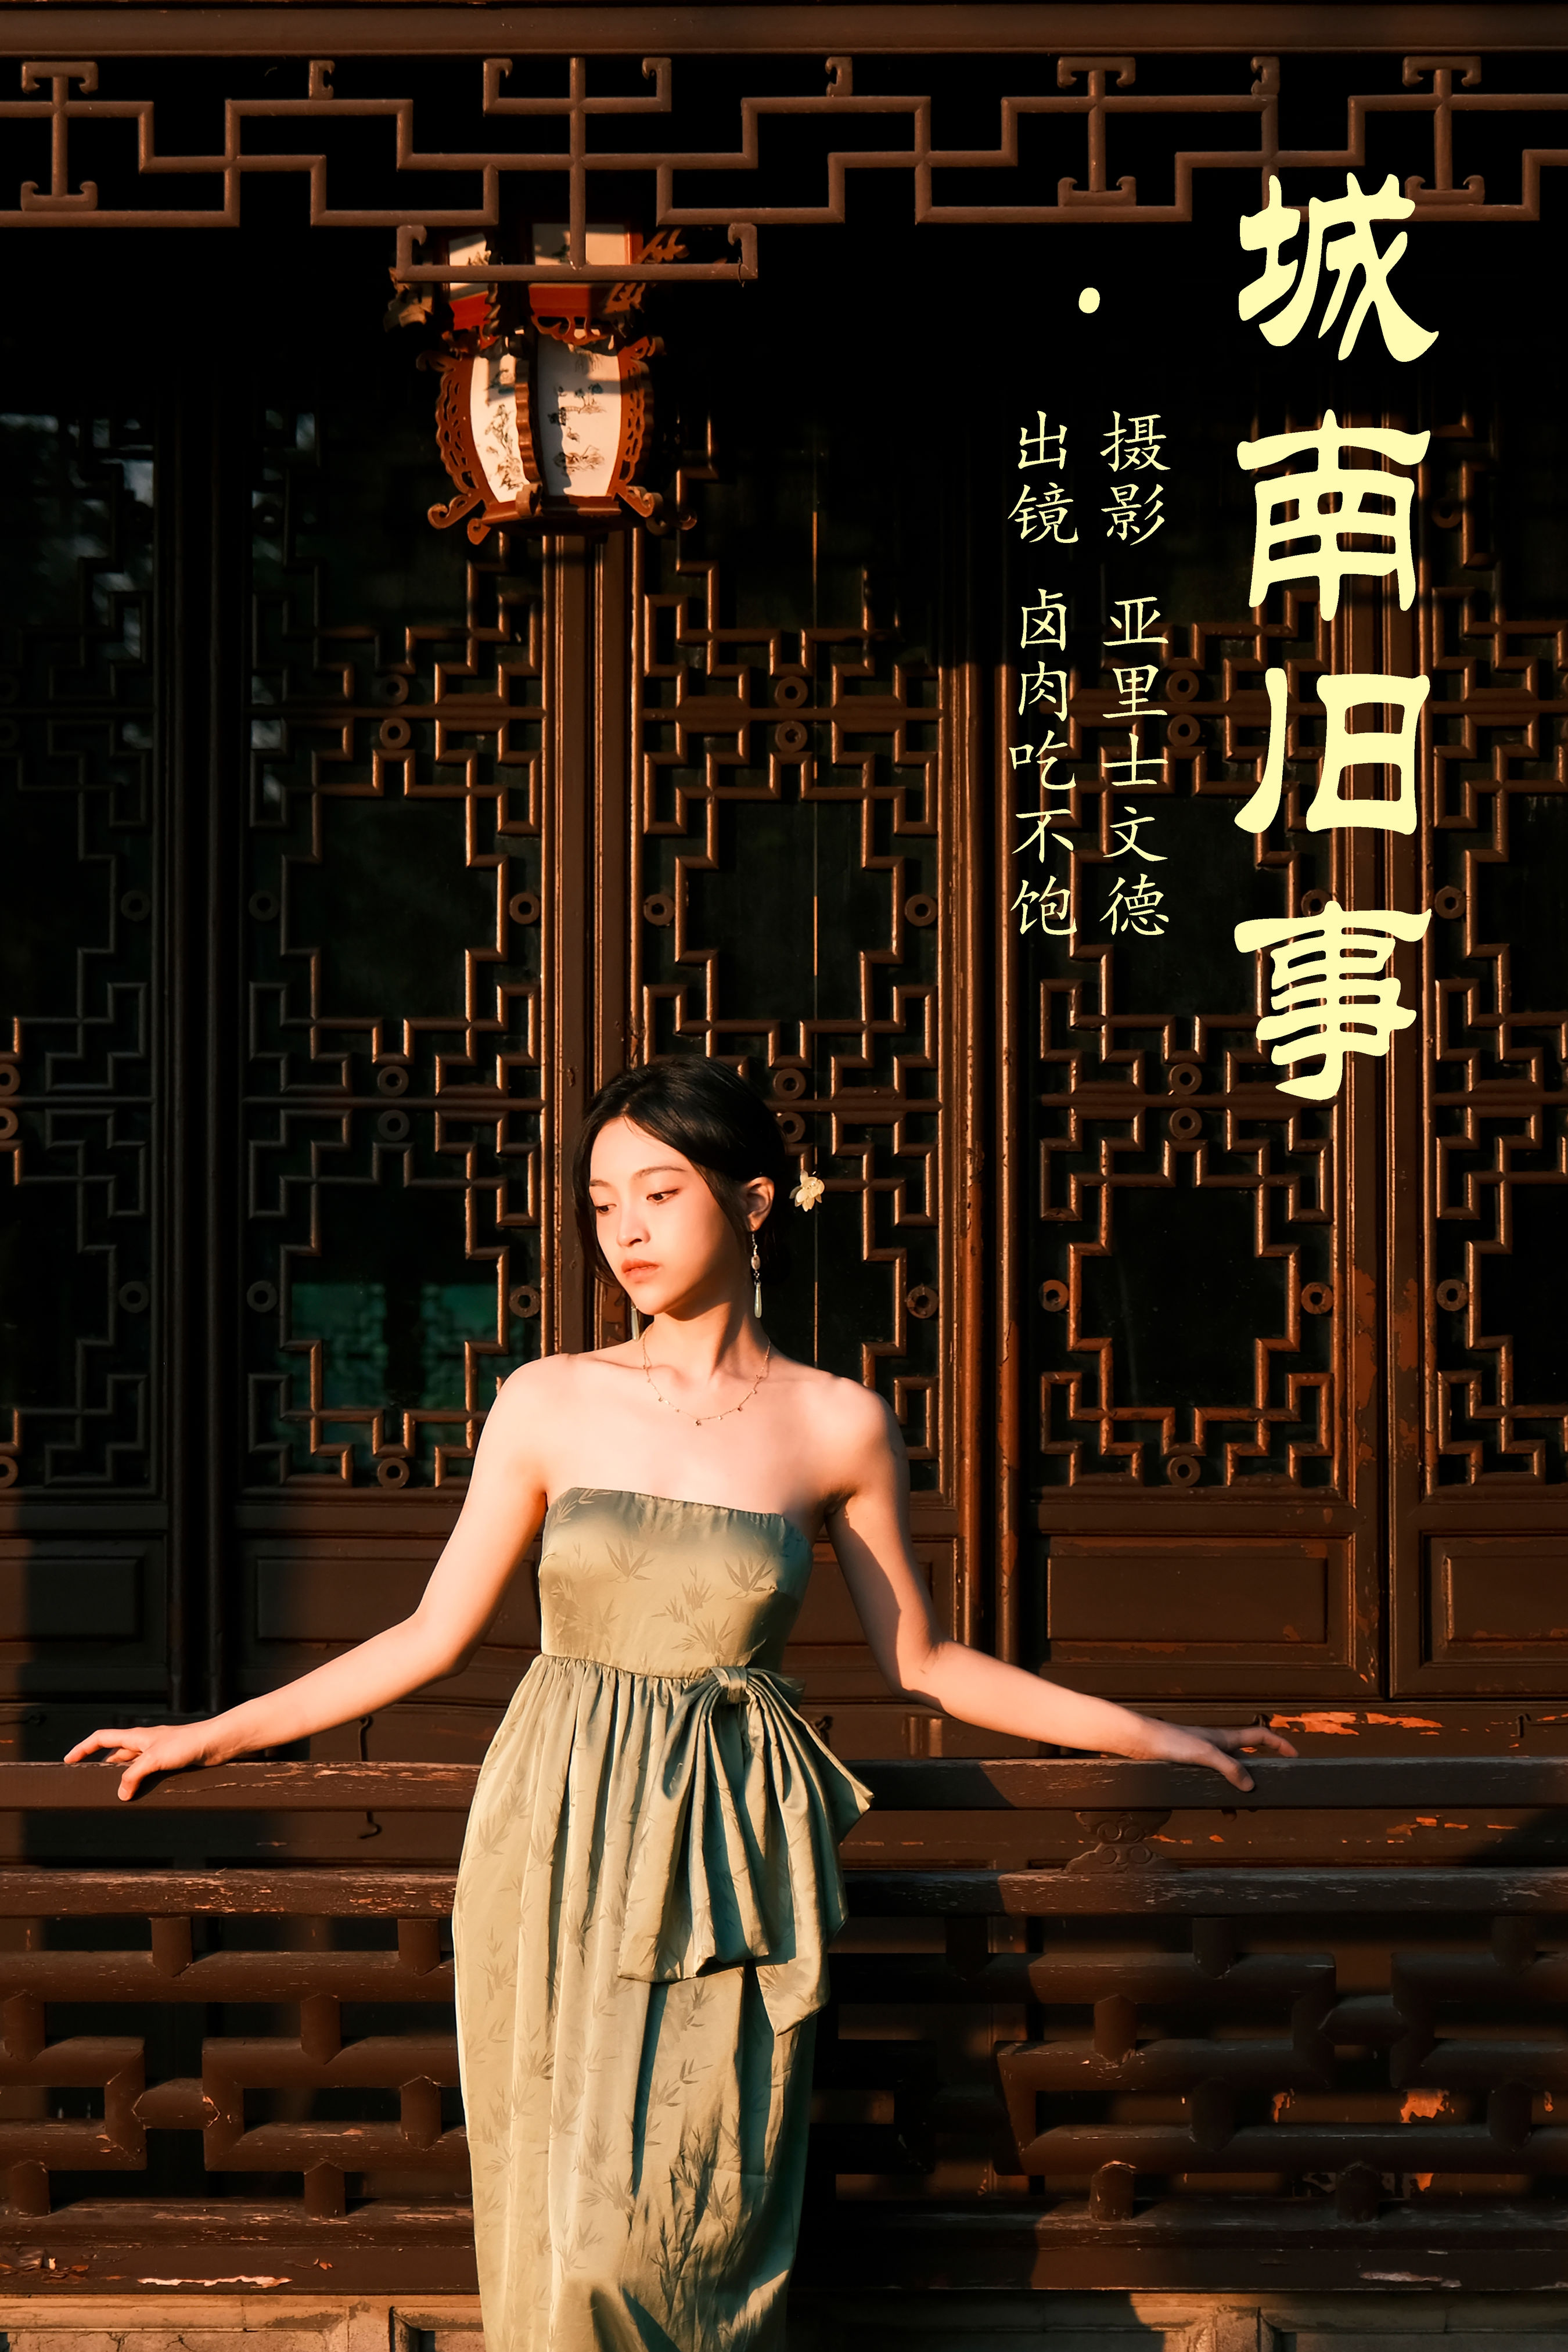 城南旧事 中国风 人像 治愈系 摄影 古典 唯美 美图 女神